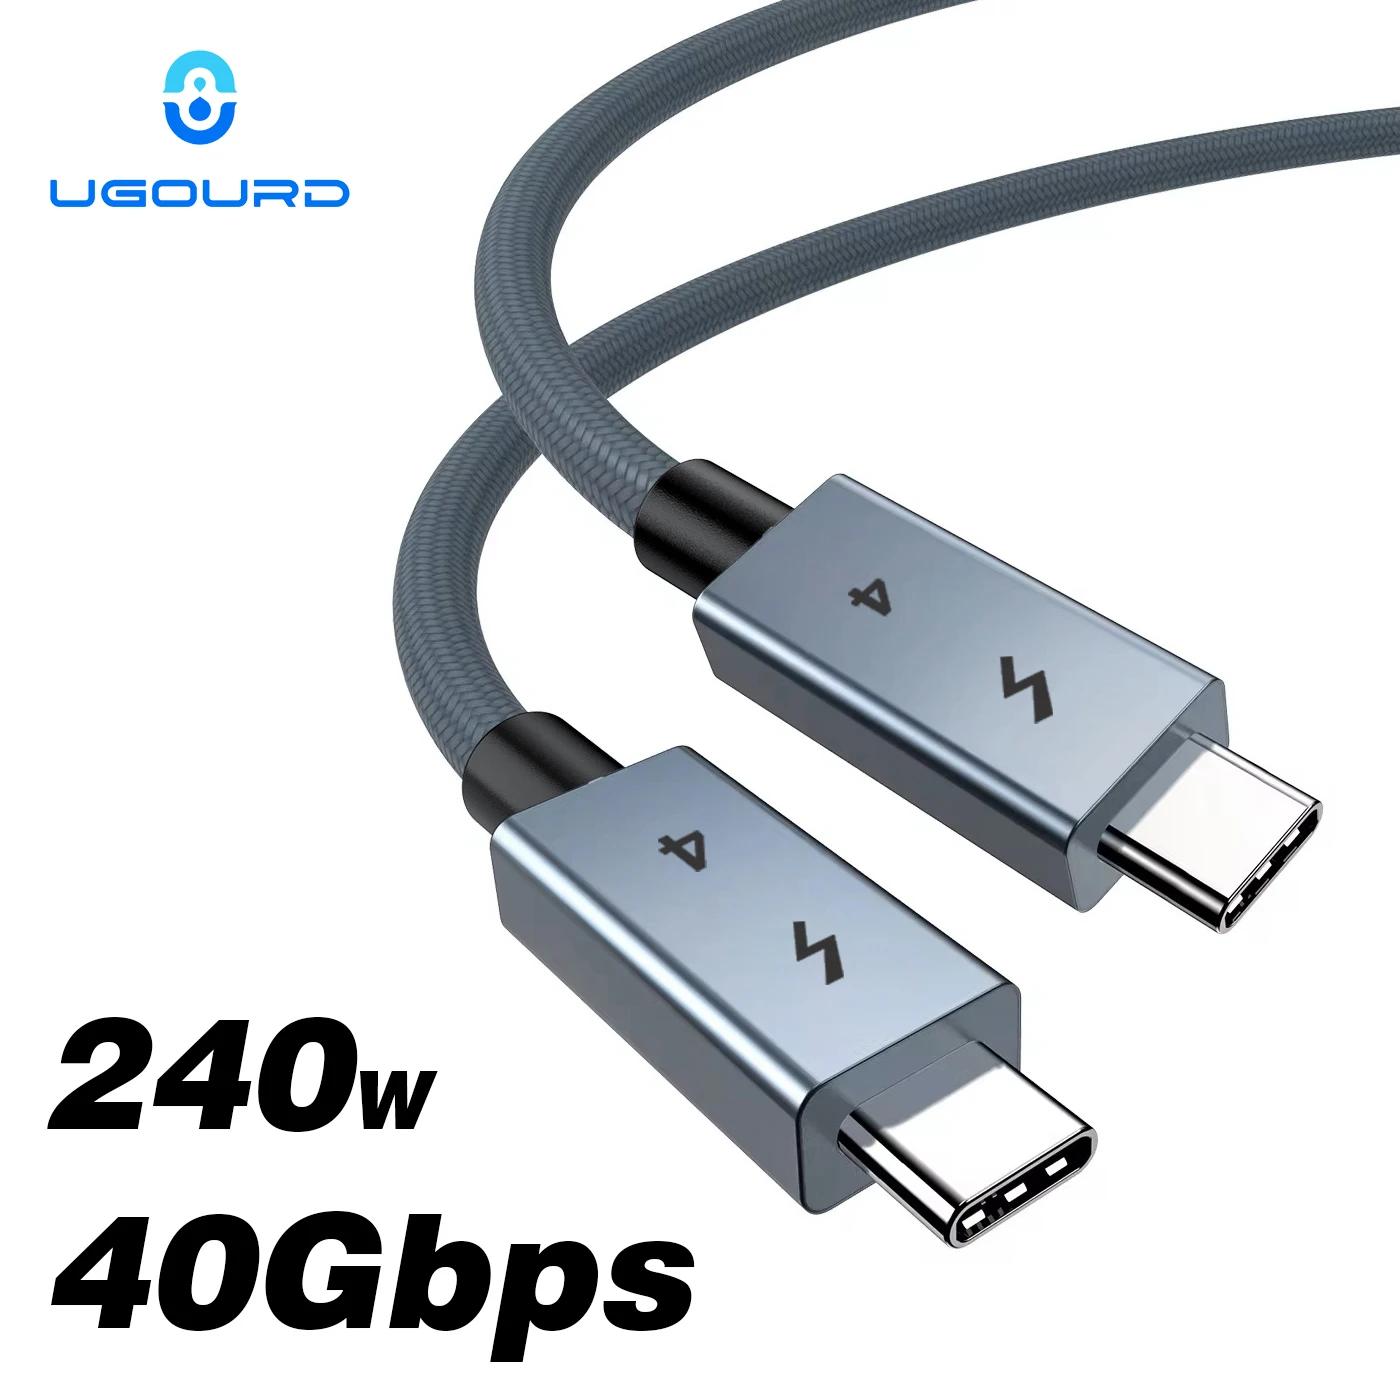 UGOURD Ʈ 4 Ÿ C   ̺, 40Gbps USB4 ̺, USB C USB C 240W, Ʈ 3, egpu SSD, е, ƺ 